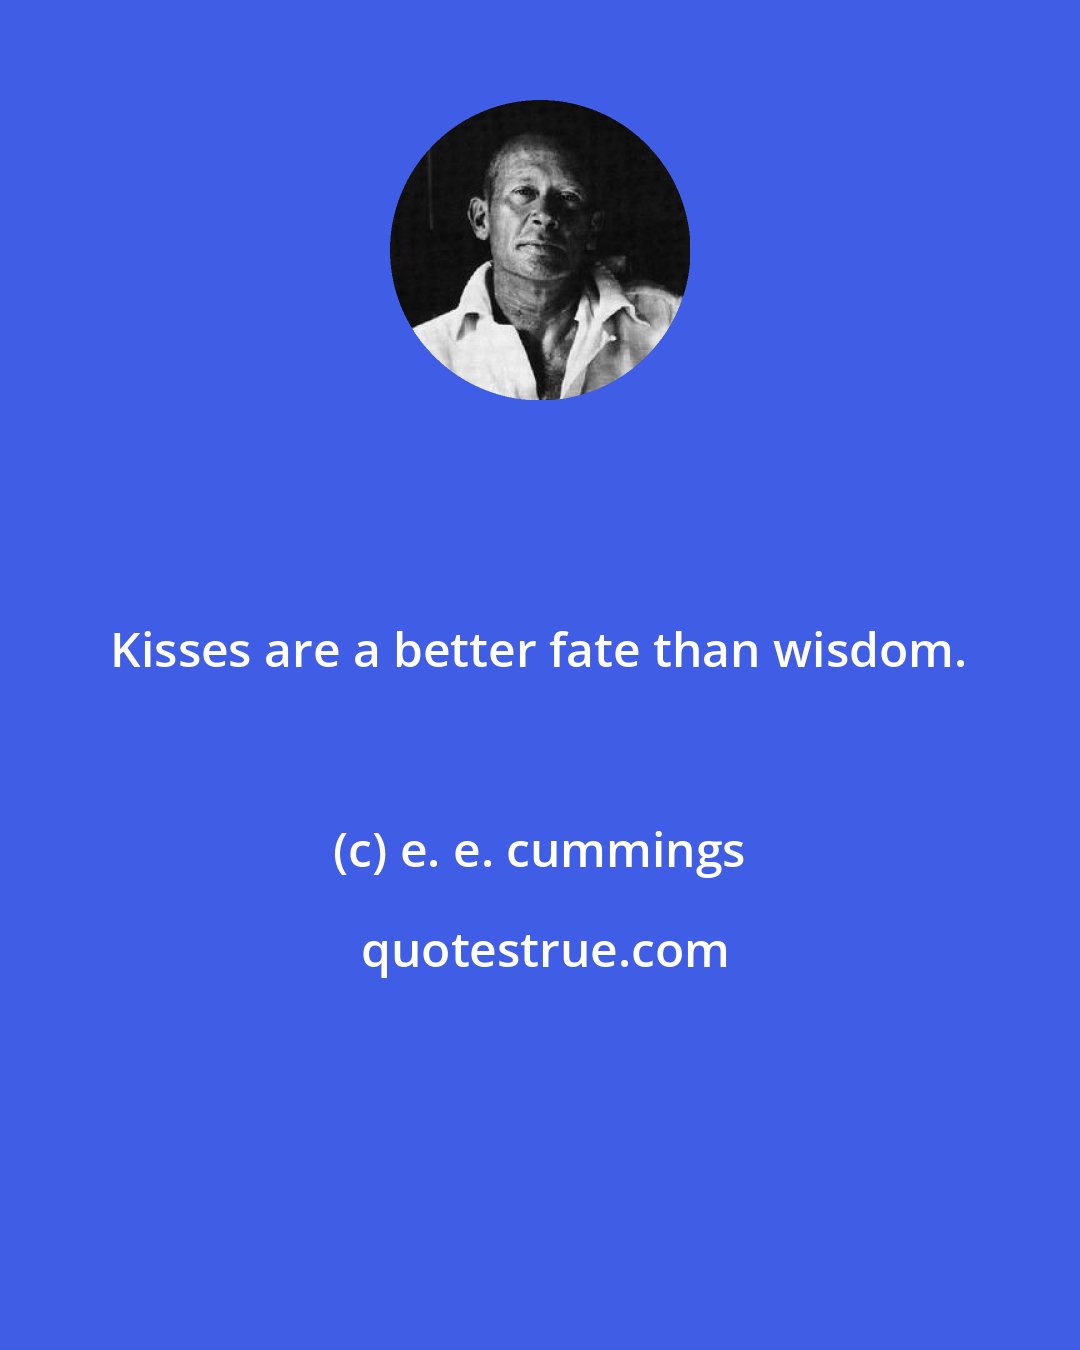 e. e. cummings: Kisses are a better fate than wisdom.